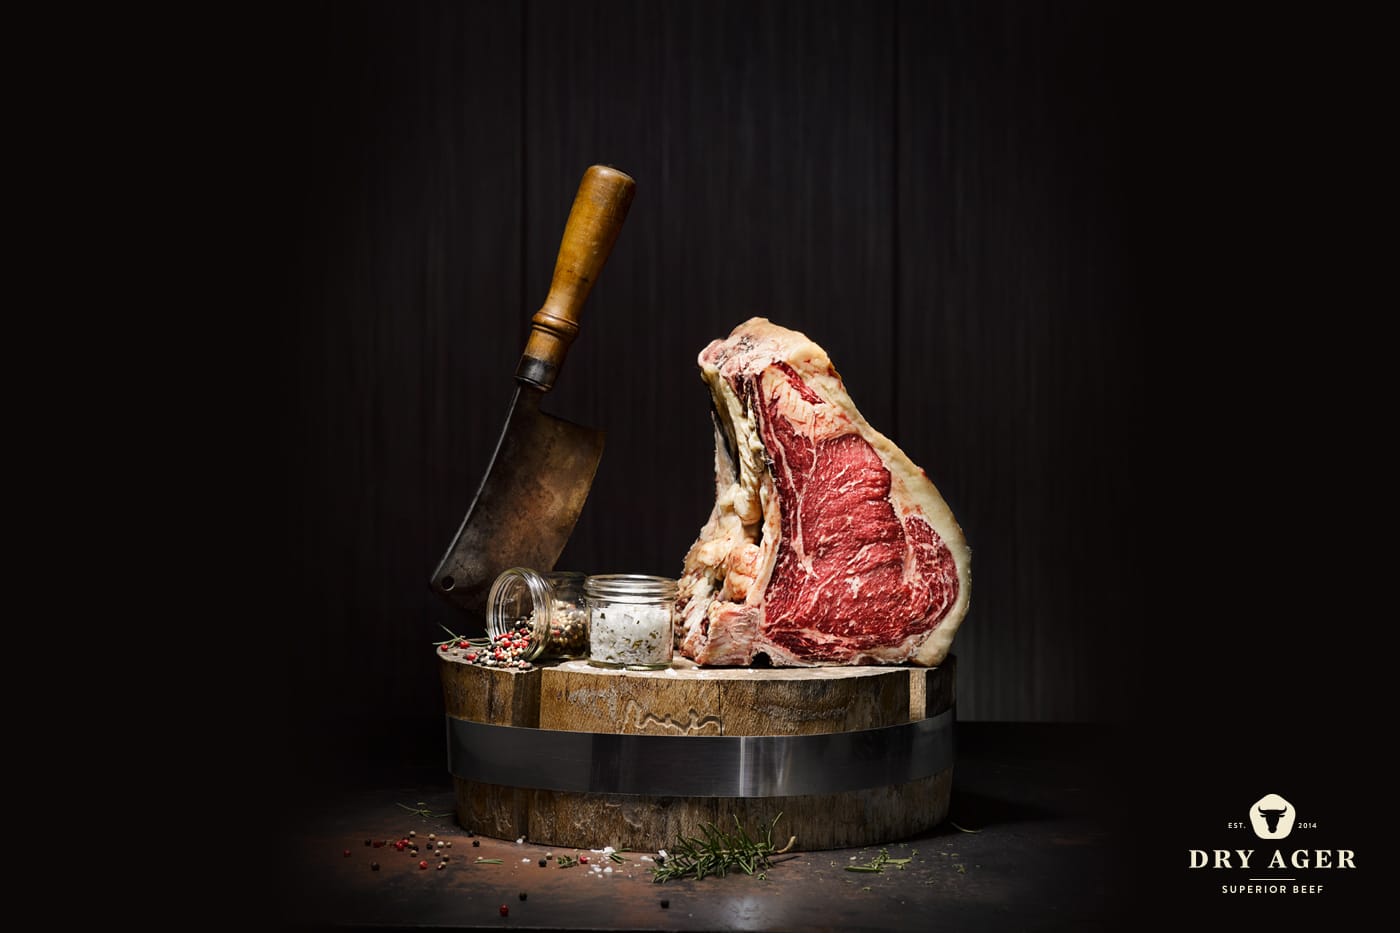 Dry Aged Beef ist hervorragendes Steakfleisch, das durch Abhängen im Kühlhaus bei konstanter Temperatur an Feuchtigkeit verliert und durch das Reifen besonders zart und aromatisch wird.